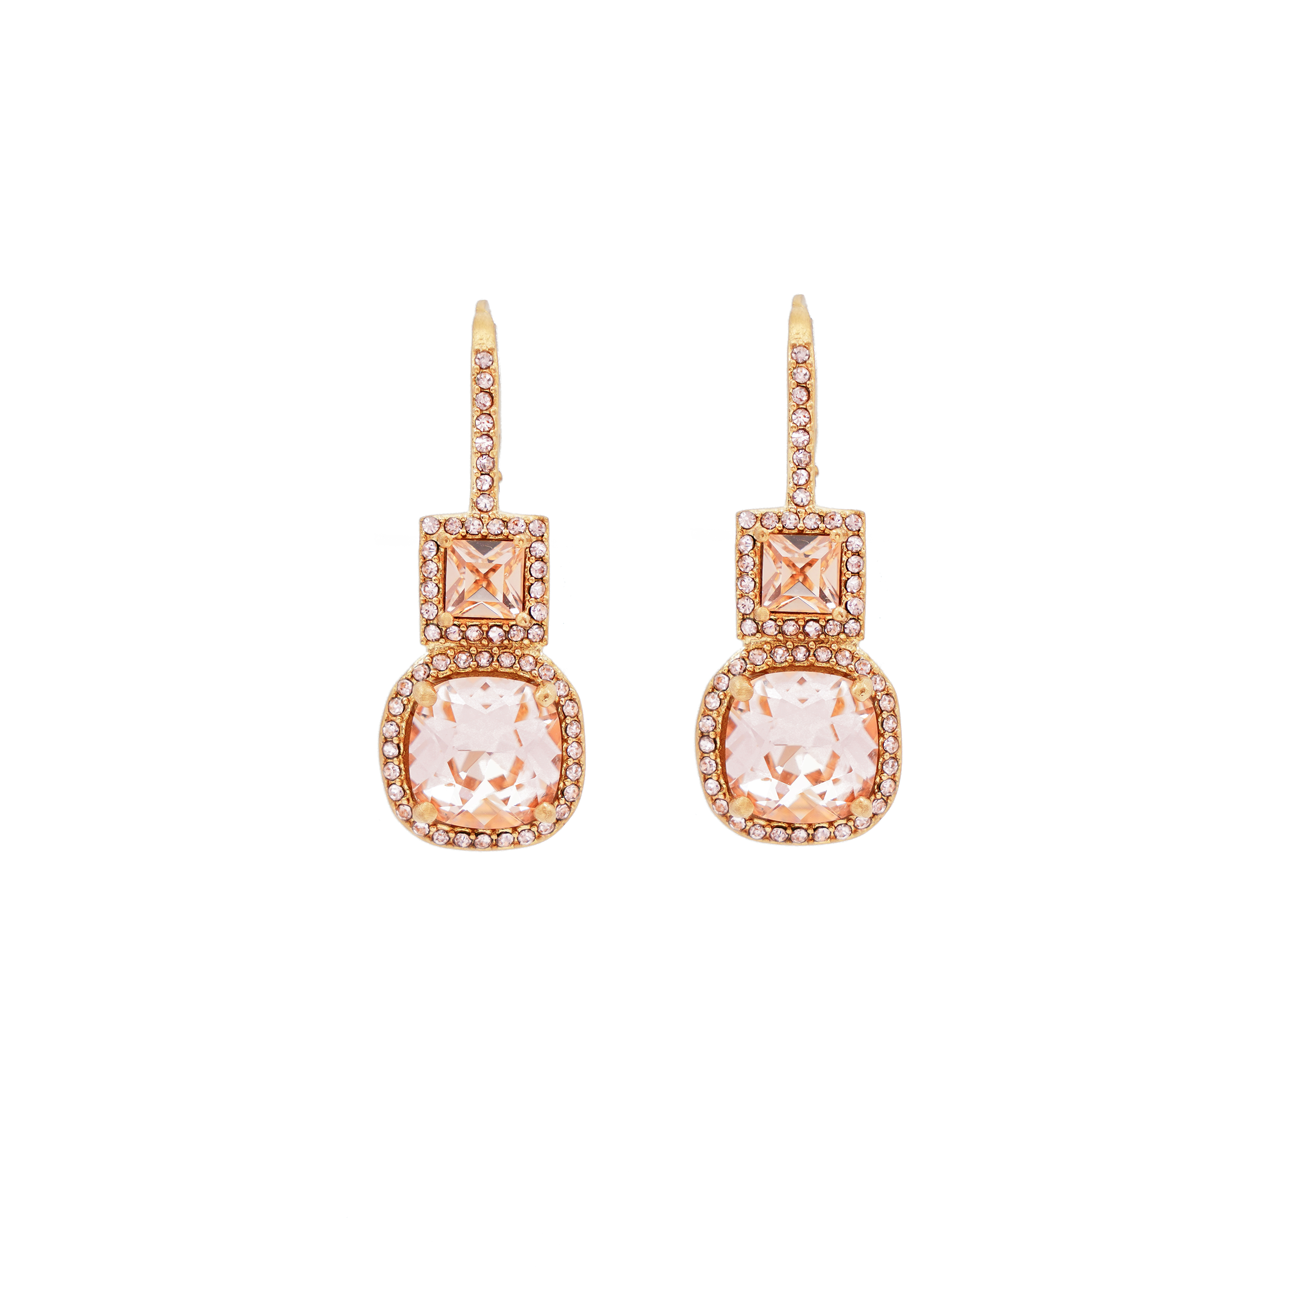 Tamara Crystal earrings, Peach